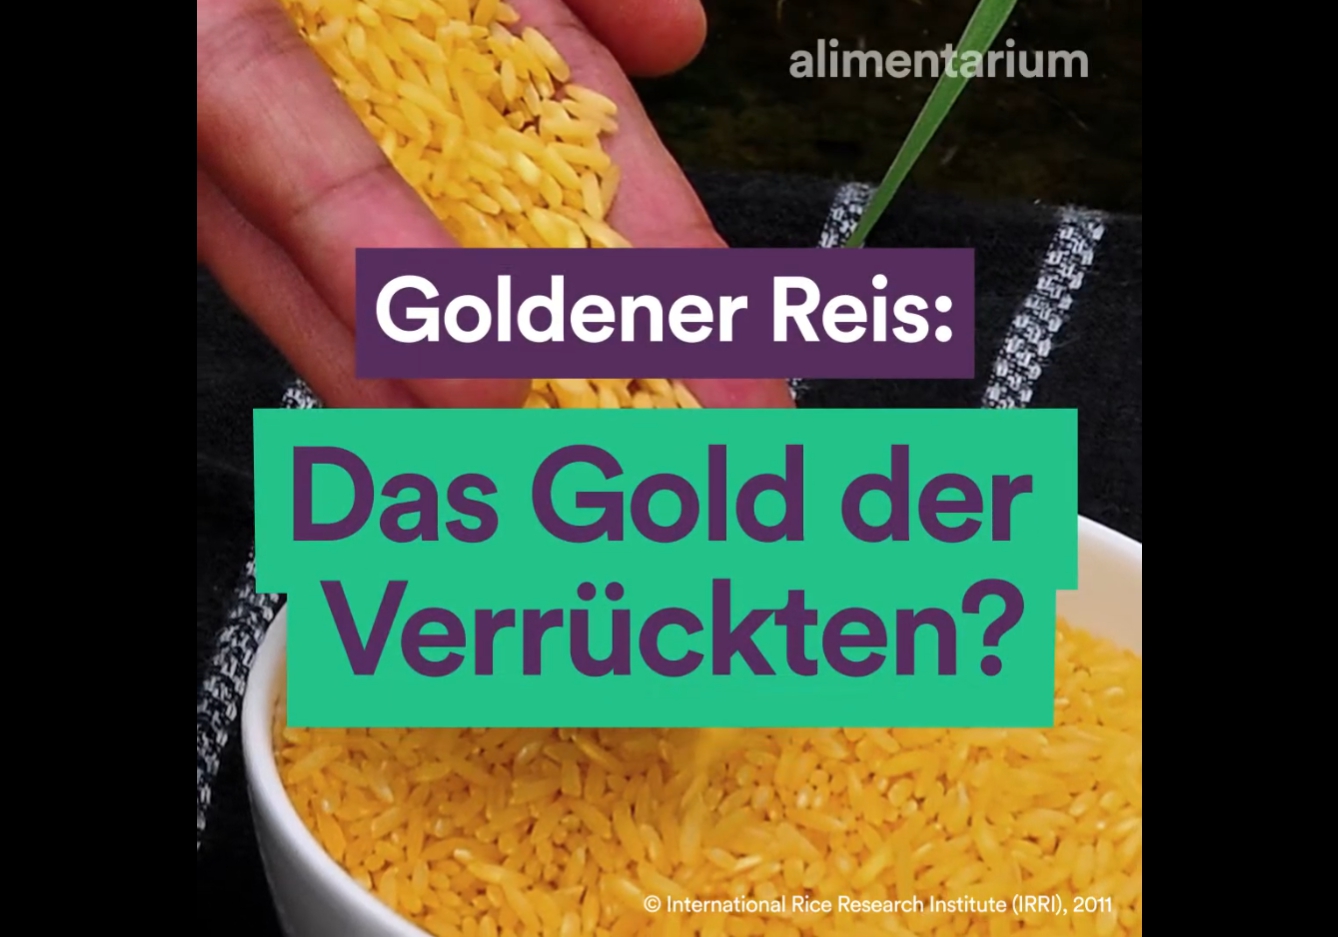 Goldener Reis: Das Gold der Verrückten?